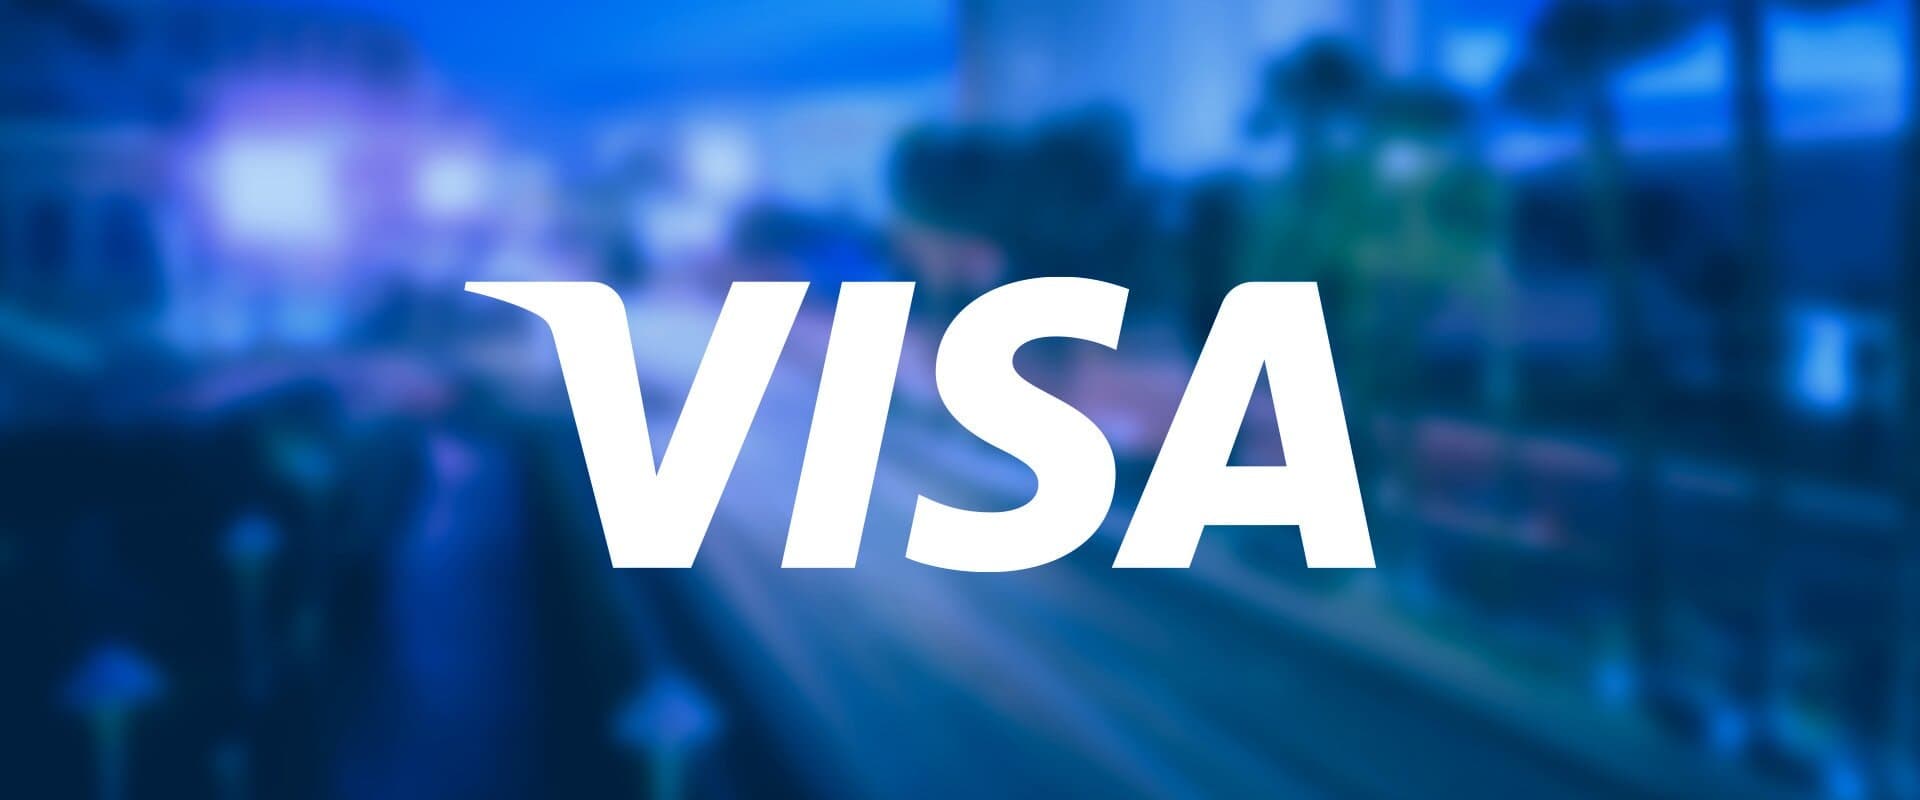 Recensioini dei Visa casinò online